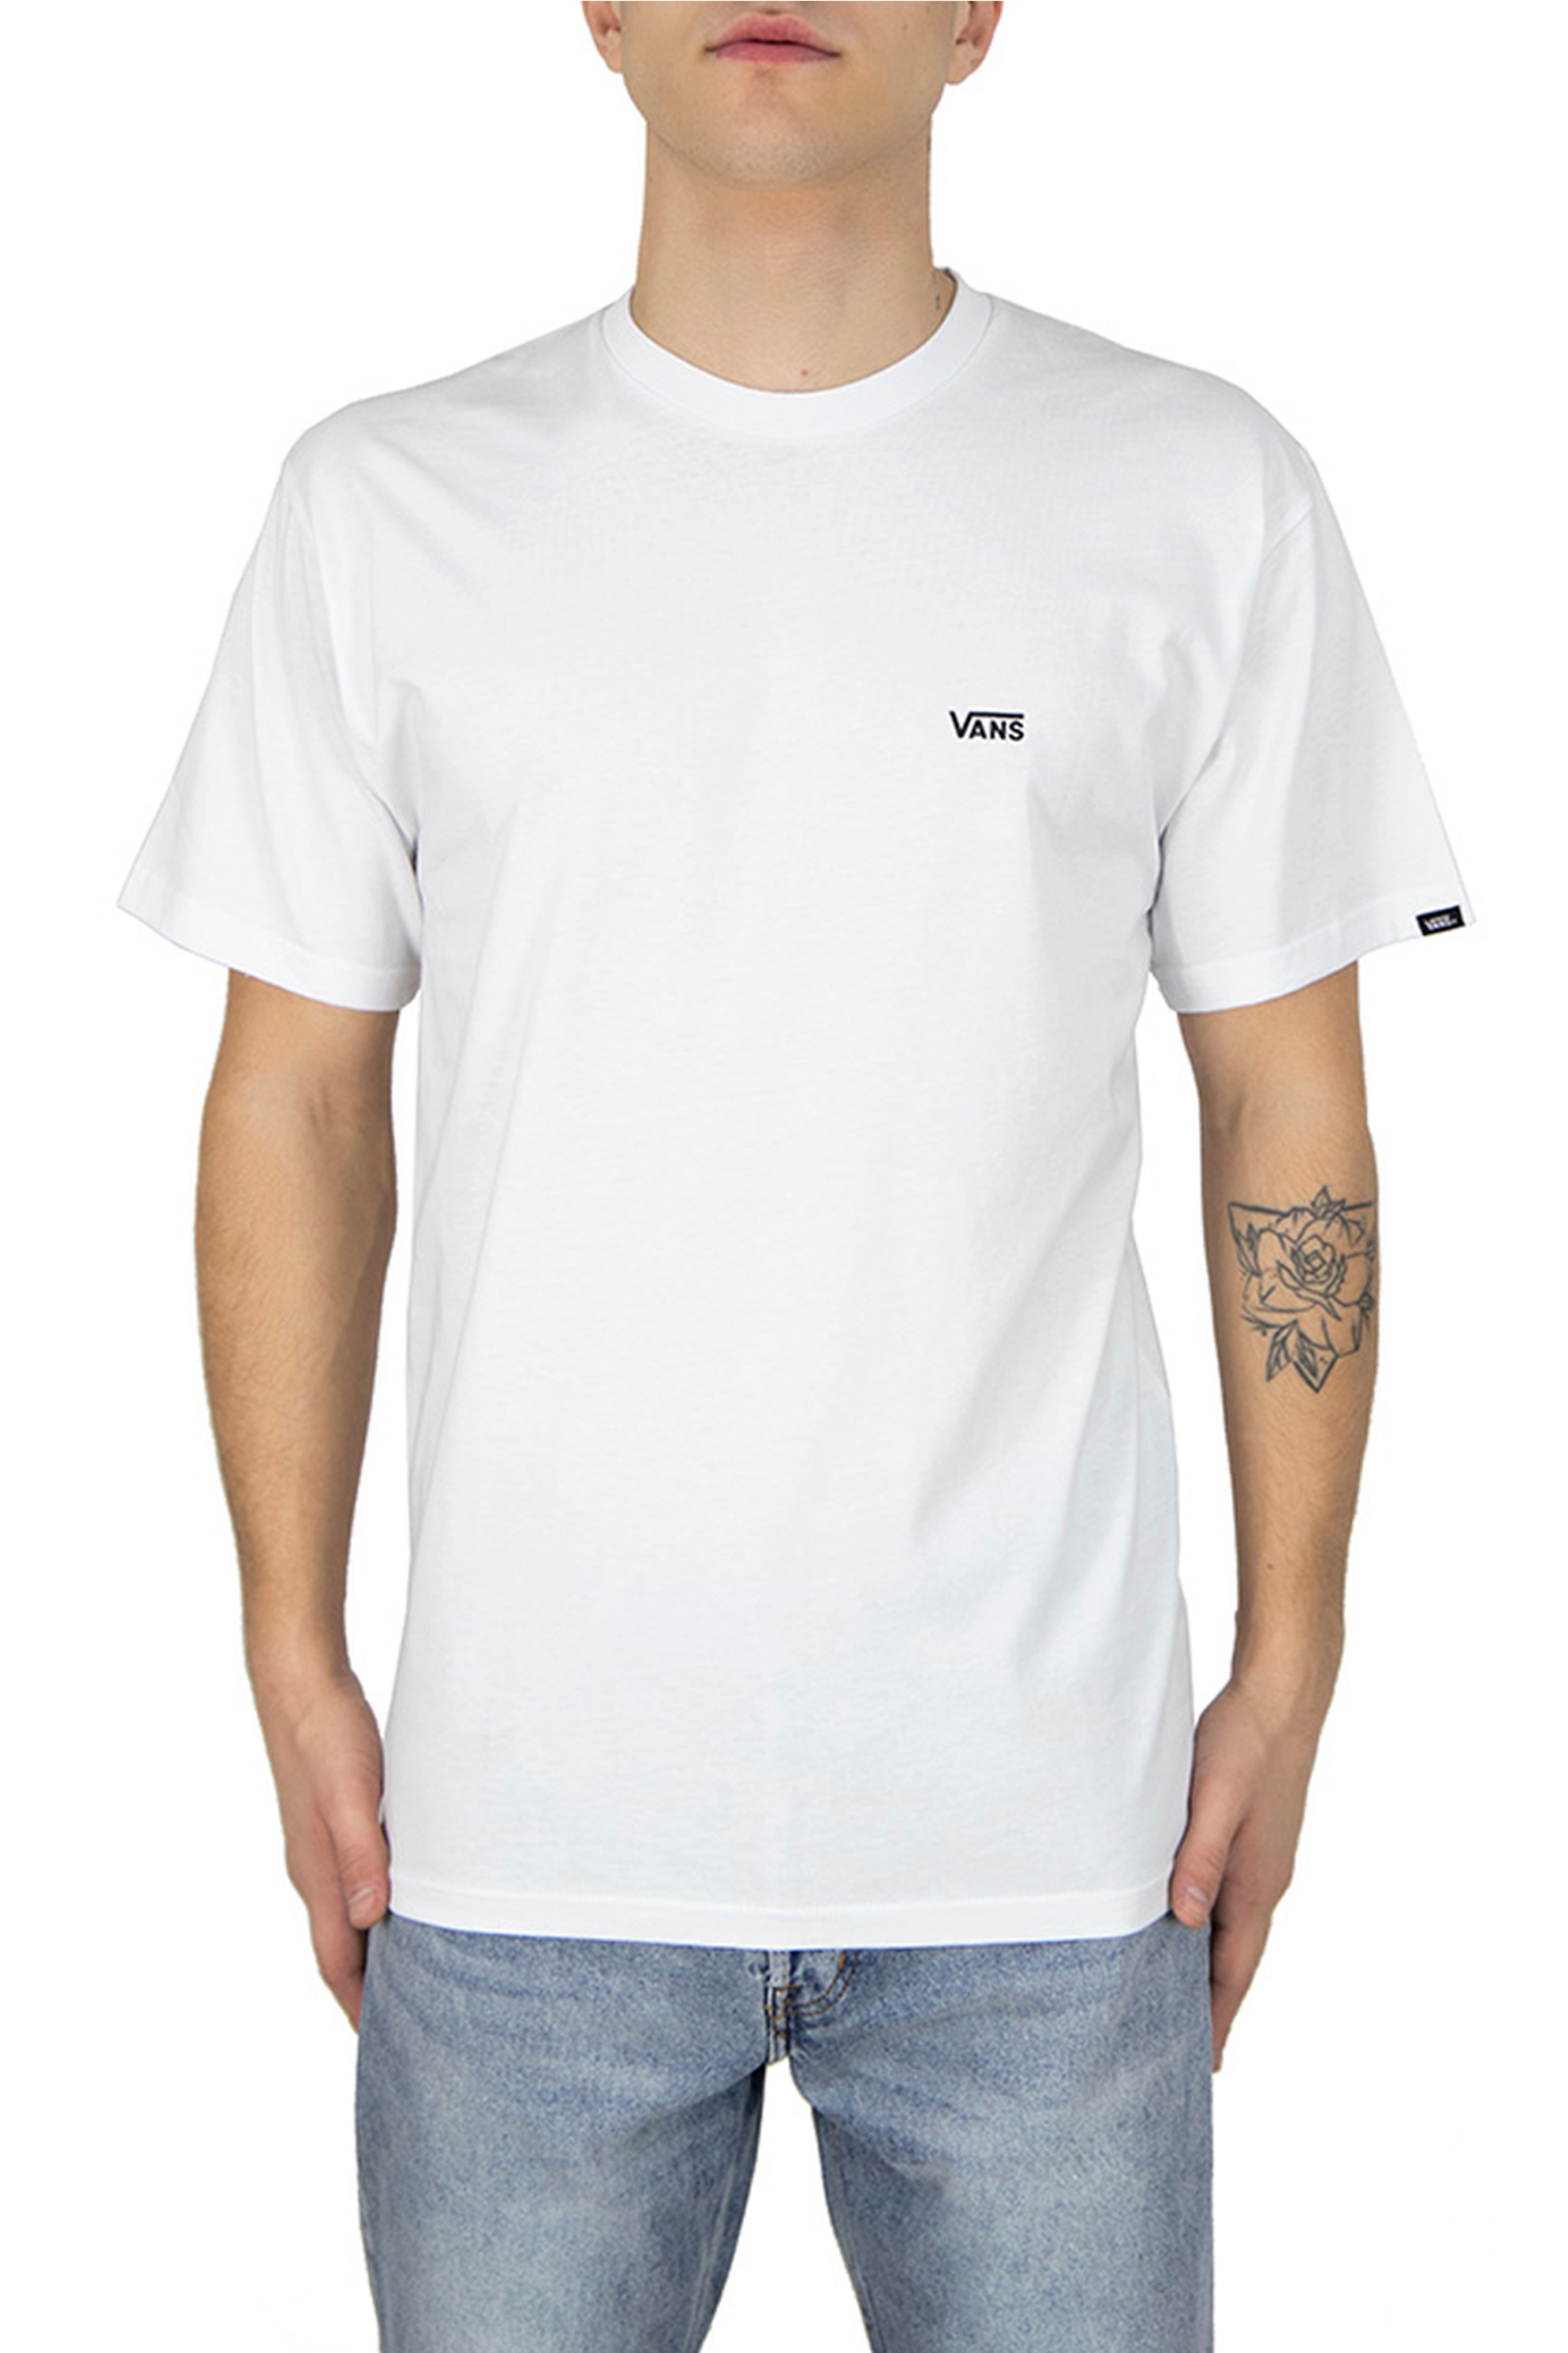 Ανδρική Μόδα > Ανδρικά Ρούχα > Ανδρικές Μπλούζες > Ανδρικά T-Shirts Vans ανδρικό T-shirt Chest Logo Tee - VN0A3CZEYB21 Λευκό